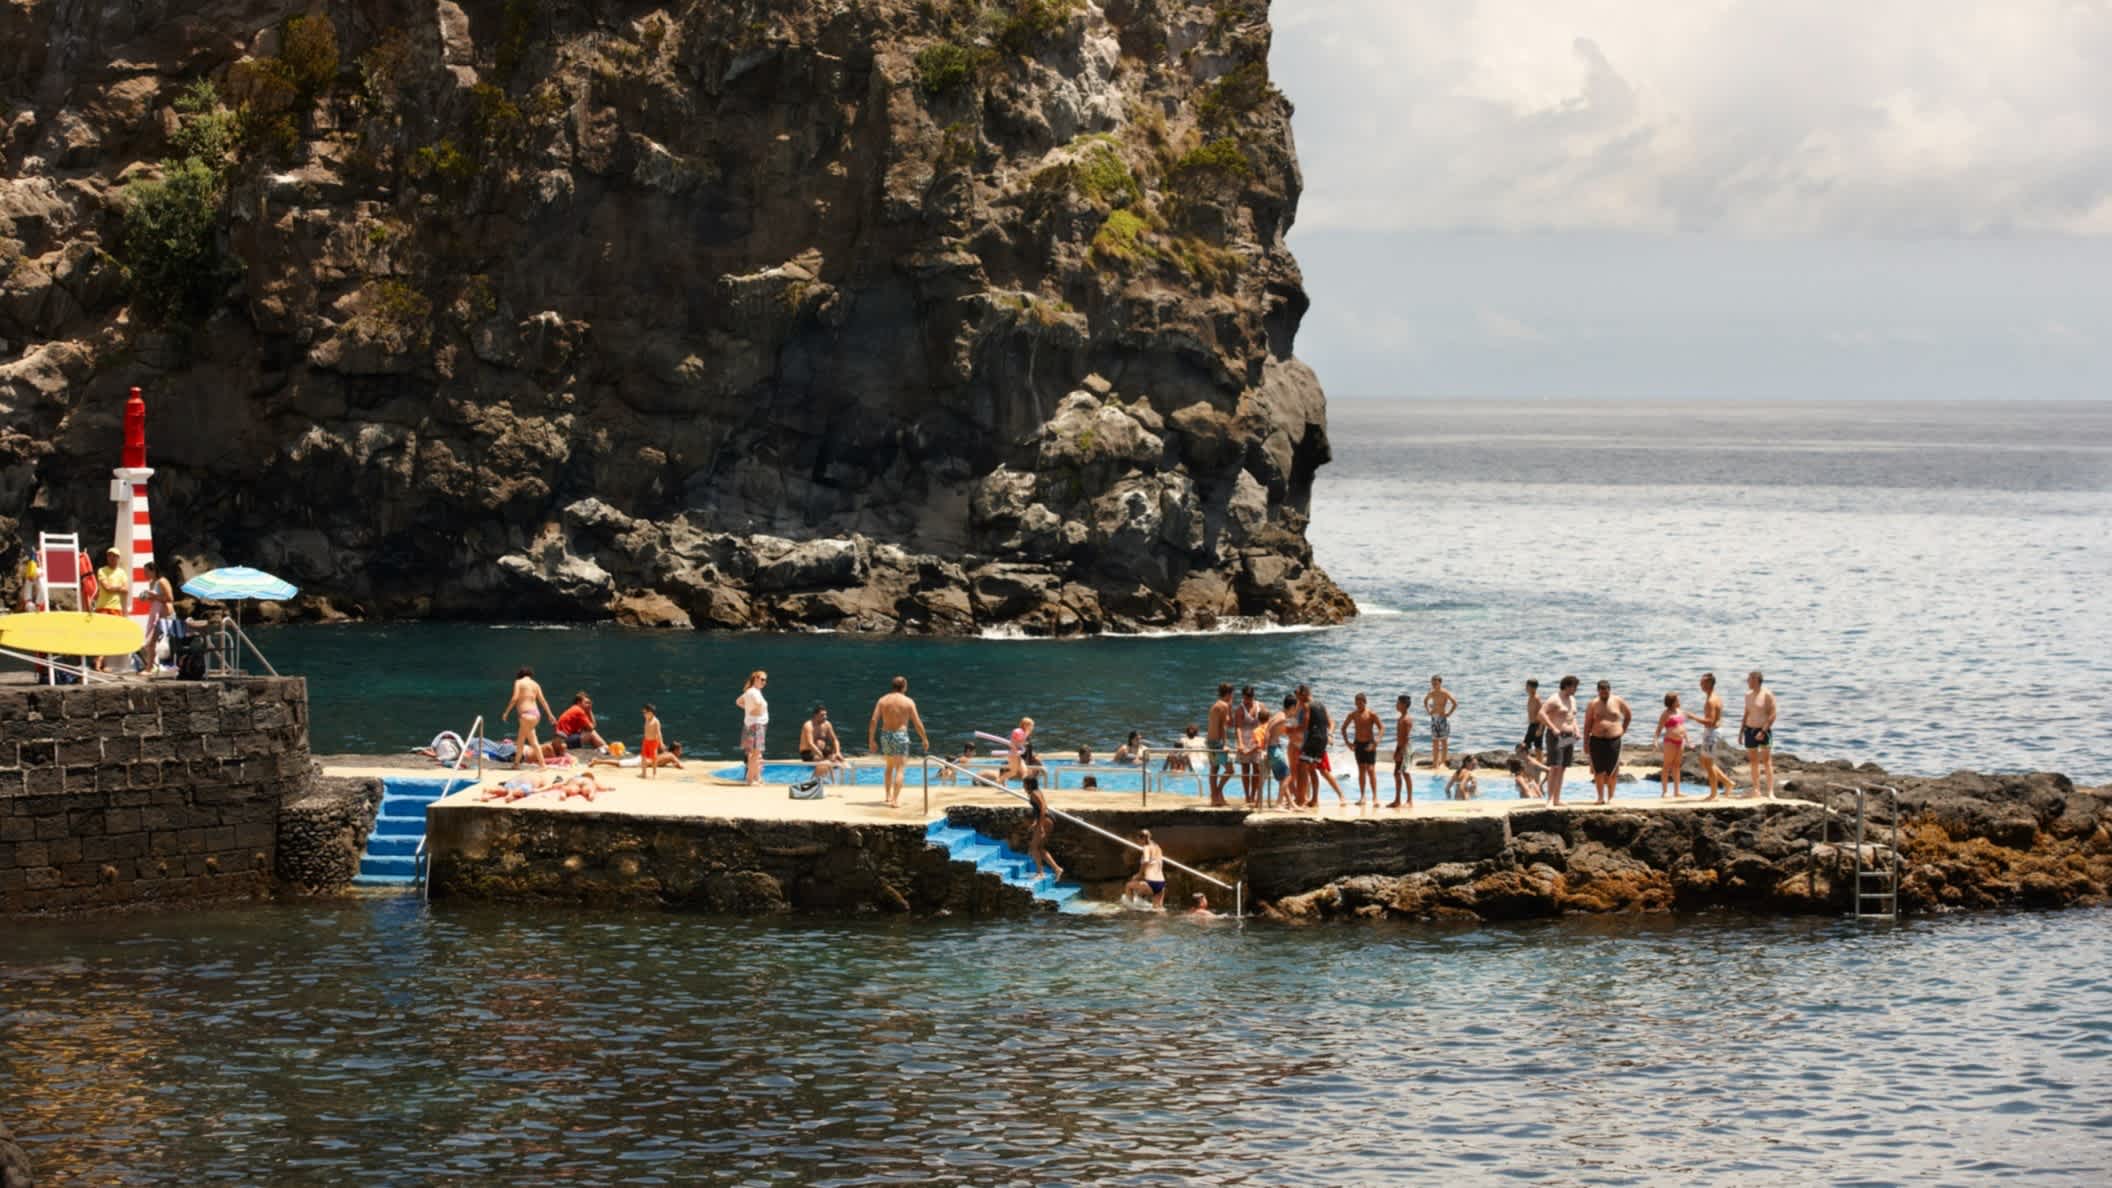 Baigneurs dans une piscine naturelle sur la plage de Caloura, à Sao Miguel, aux Açores, au Portugal.

